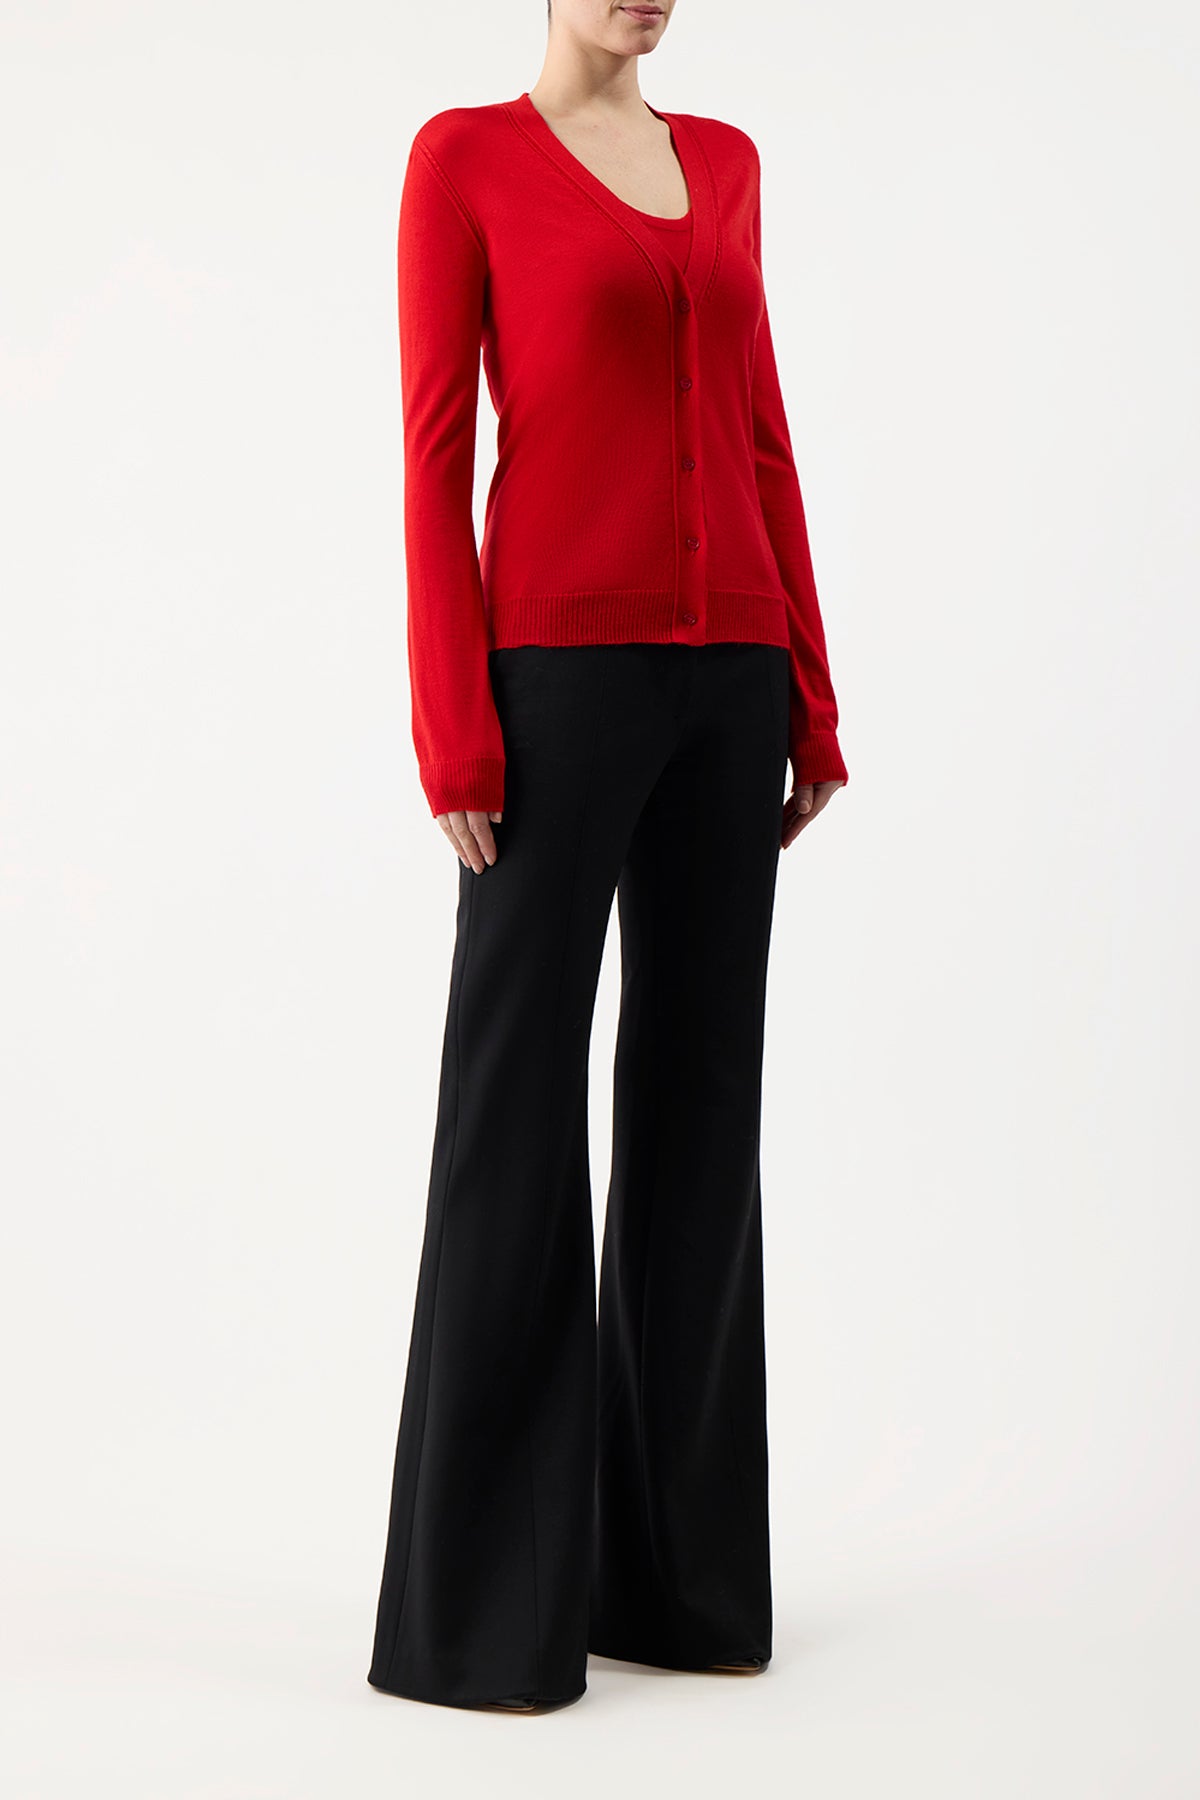 Tori Knit Cardigan in Red Topaz Cashmere Silk